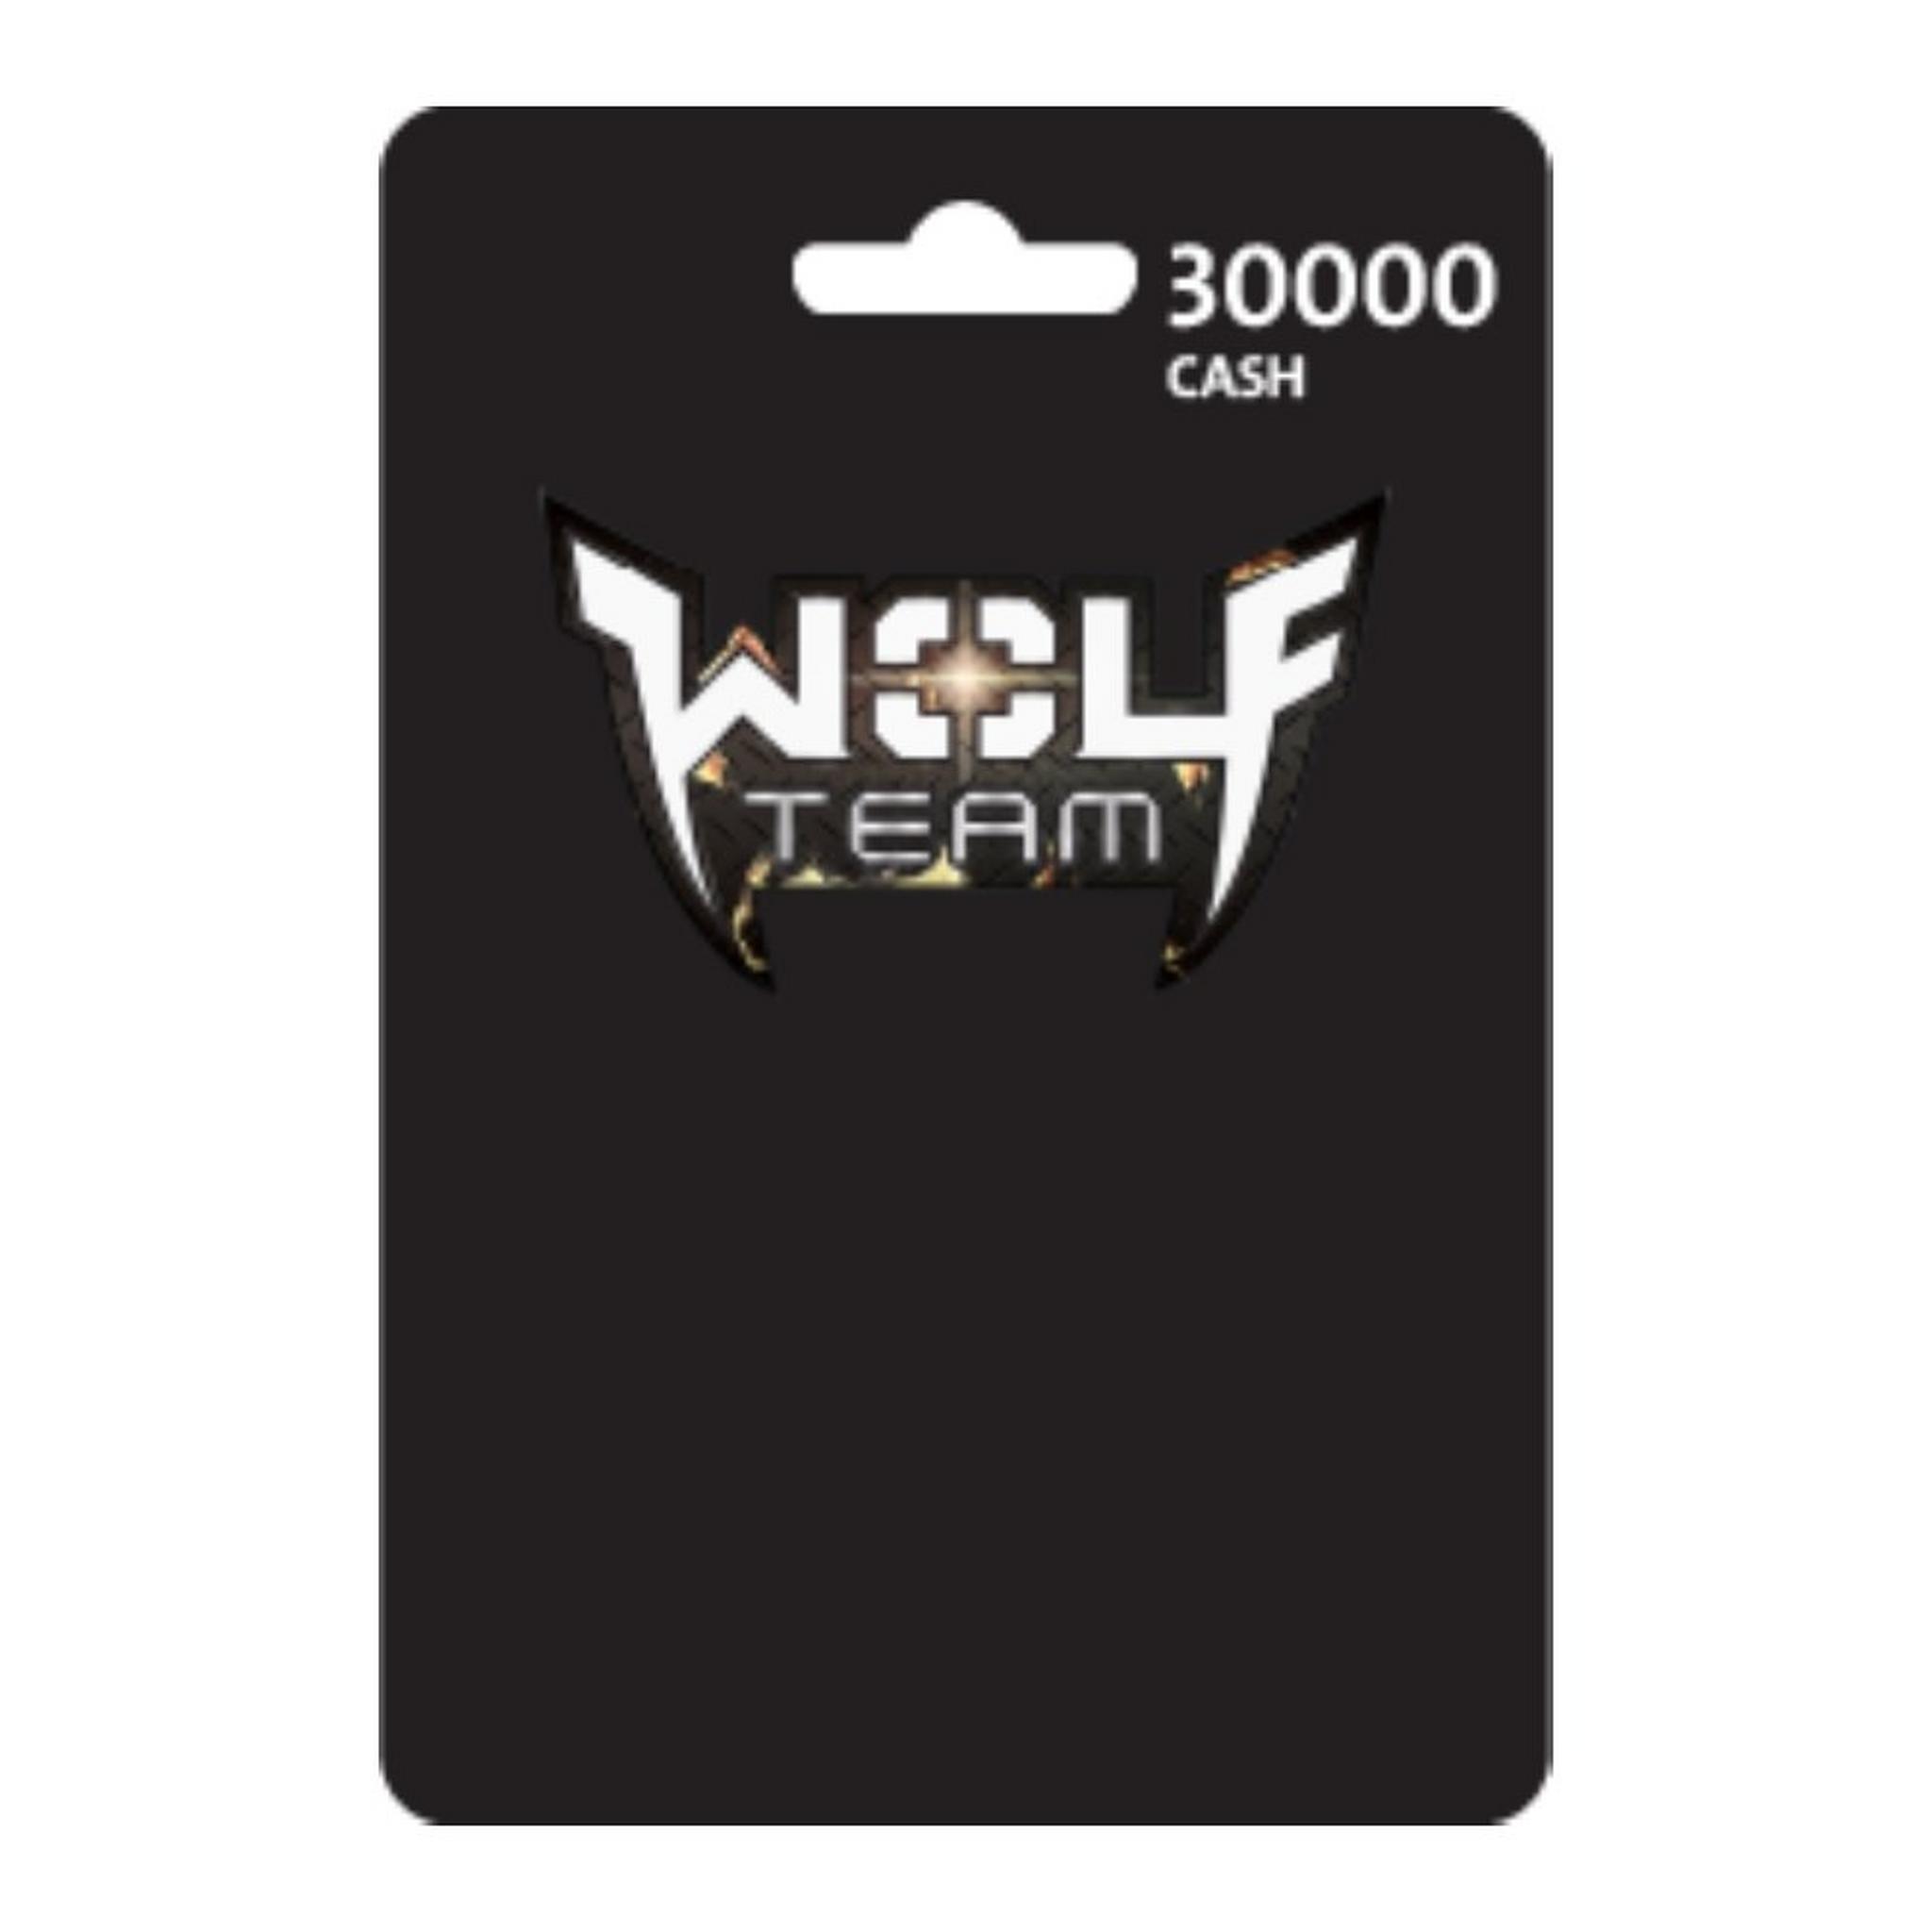 Wolfteam Mena 30000 Cash